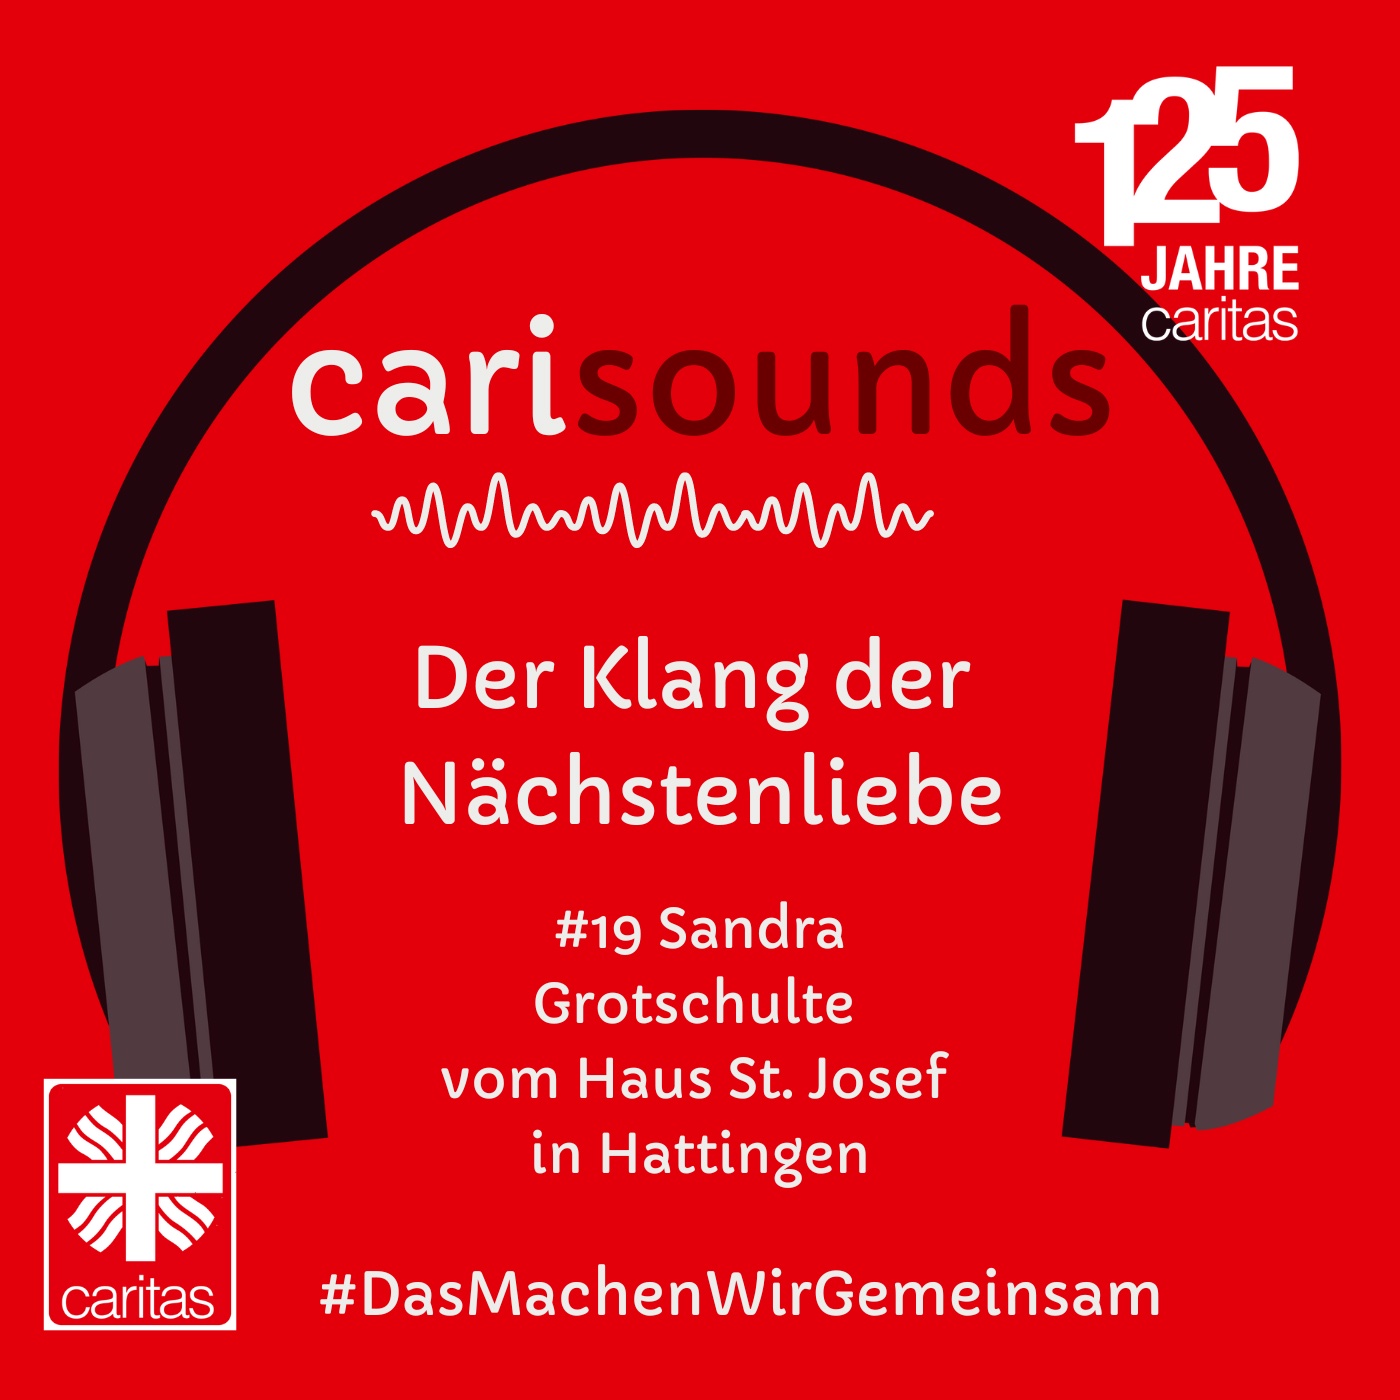 #19 carisounds - Der Klang der Nächstenliebe - Sandra Grotschulte  vom Haus St. Josef  in Hattingen